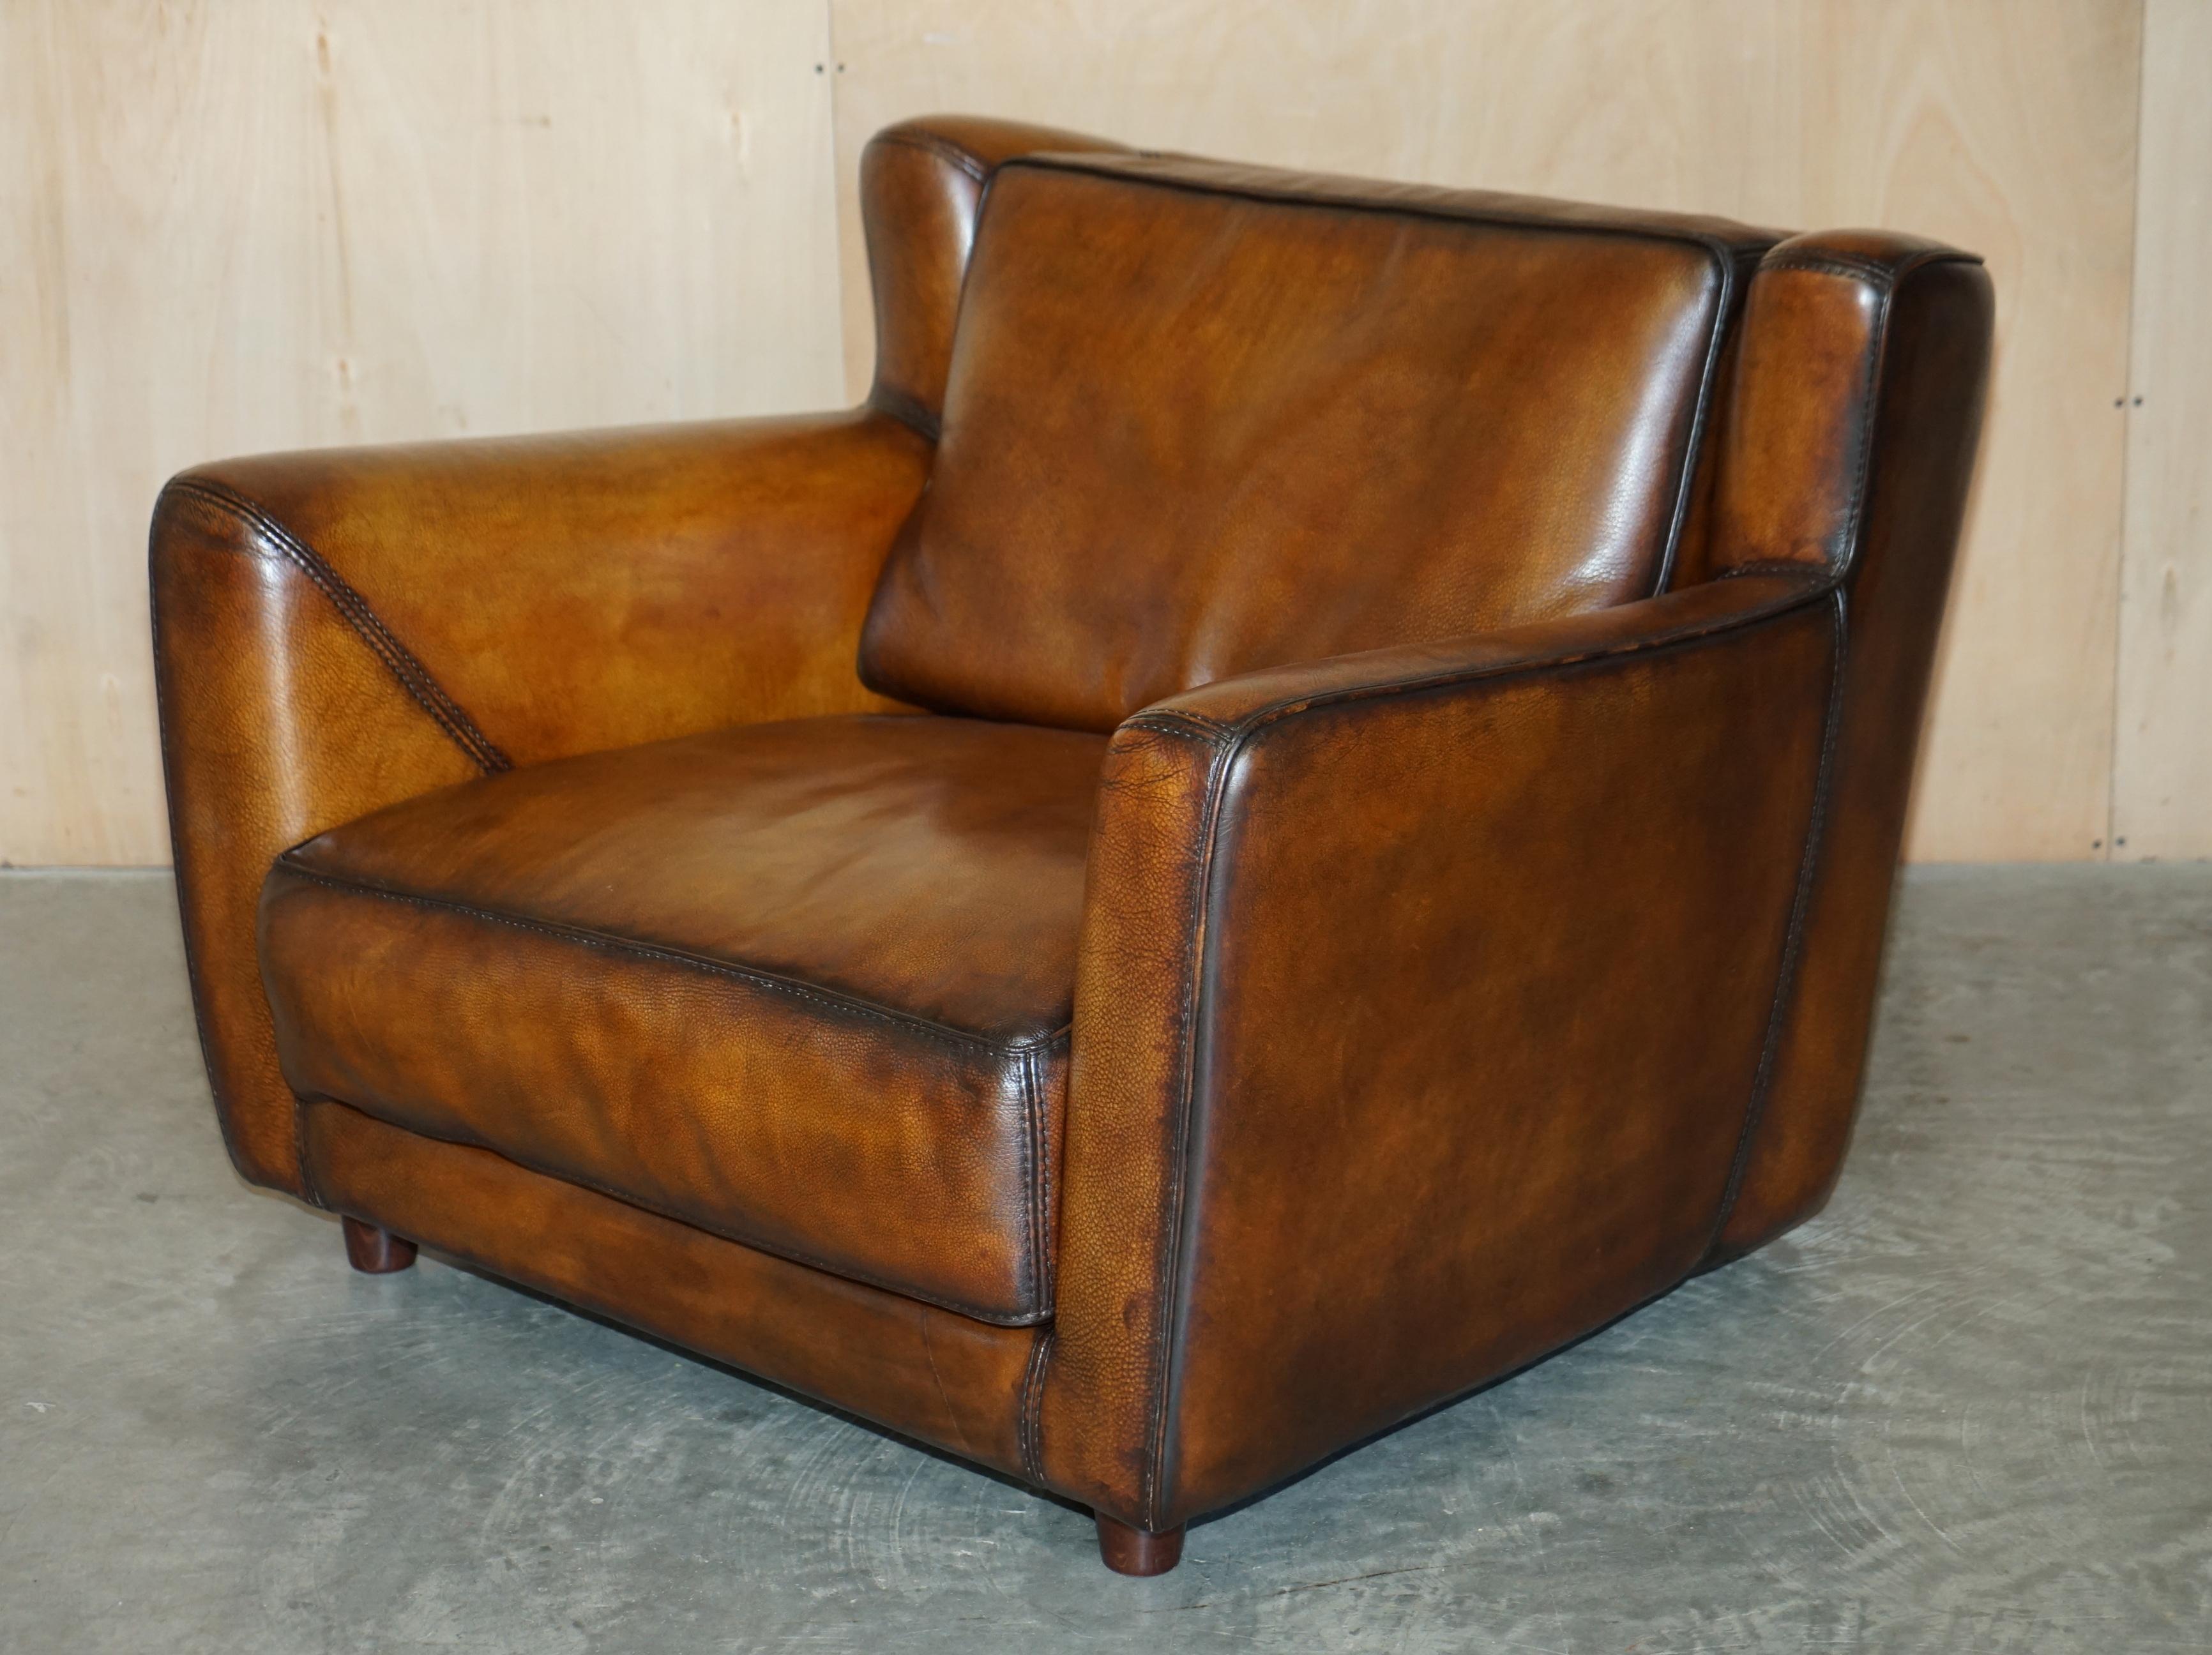 Wir freuen uns, dieses sehr gut gemachte Paar originaler Baxter Berger Sessel, handgefärbt in der einzigartigen zigarrenbraunen Farbe, zum Verkauf anbieten zu können.

Dies ist eines der beeindruckendsten Paare von Sesseln, die ich seit langem